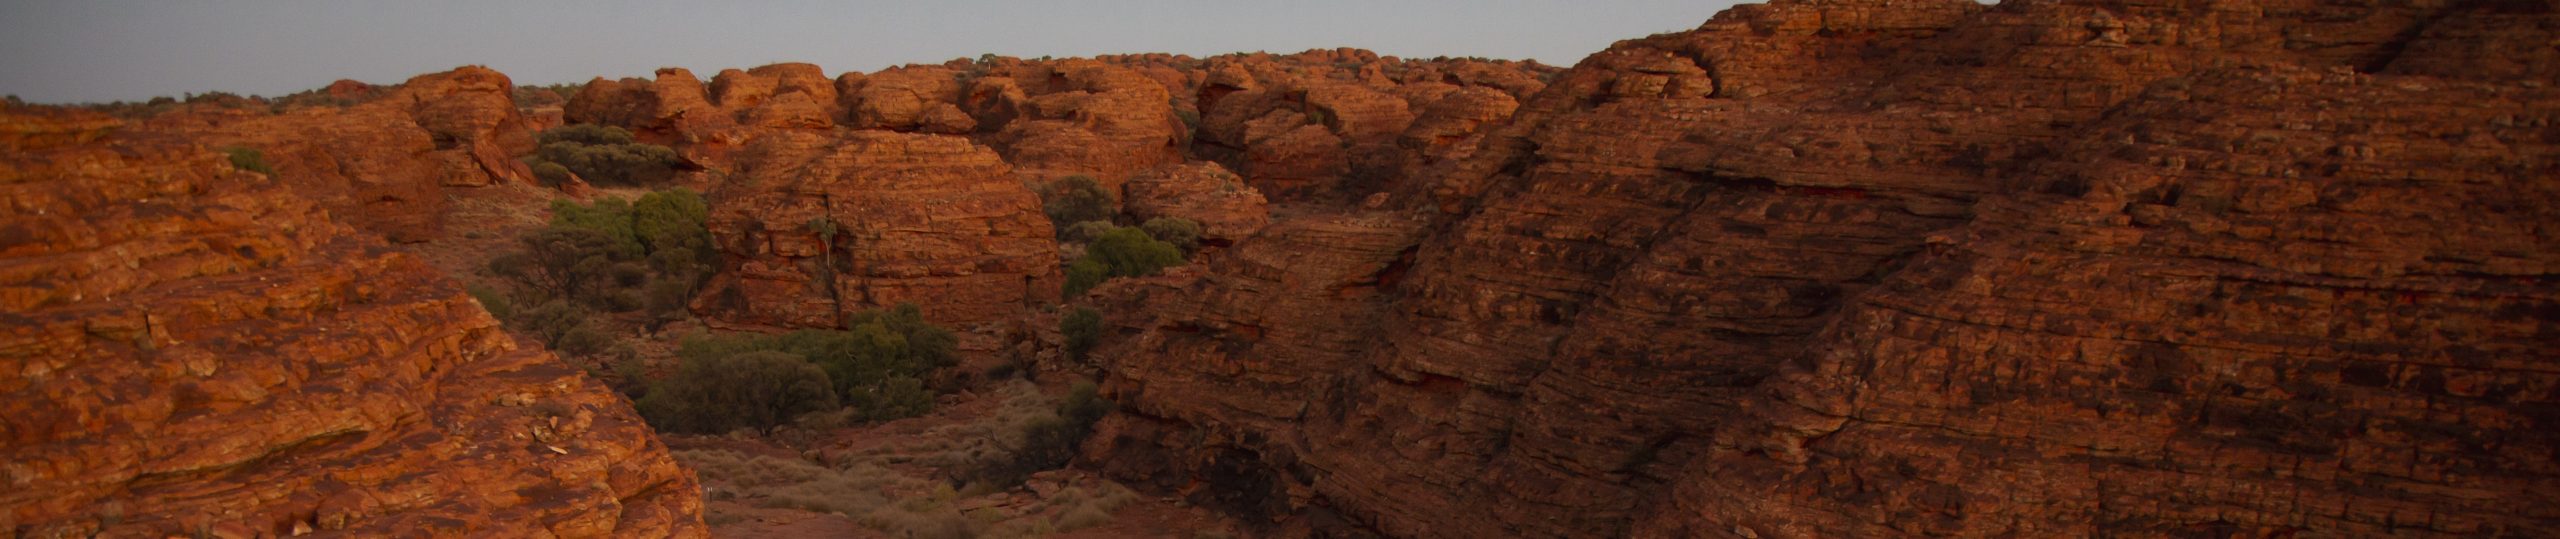 Kings Canyon - Uluru (Ayers Rock) (F)